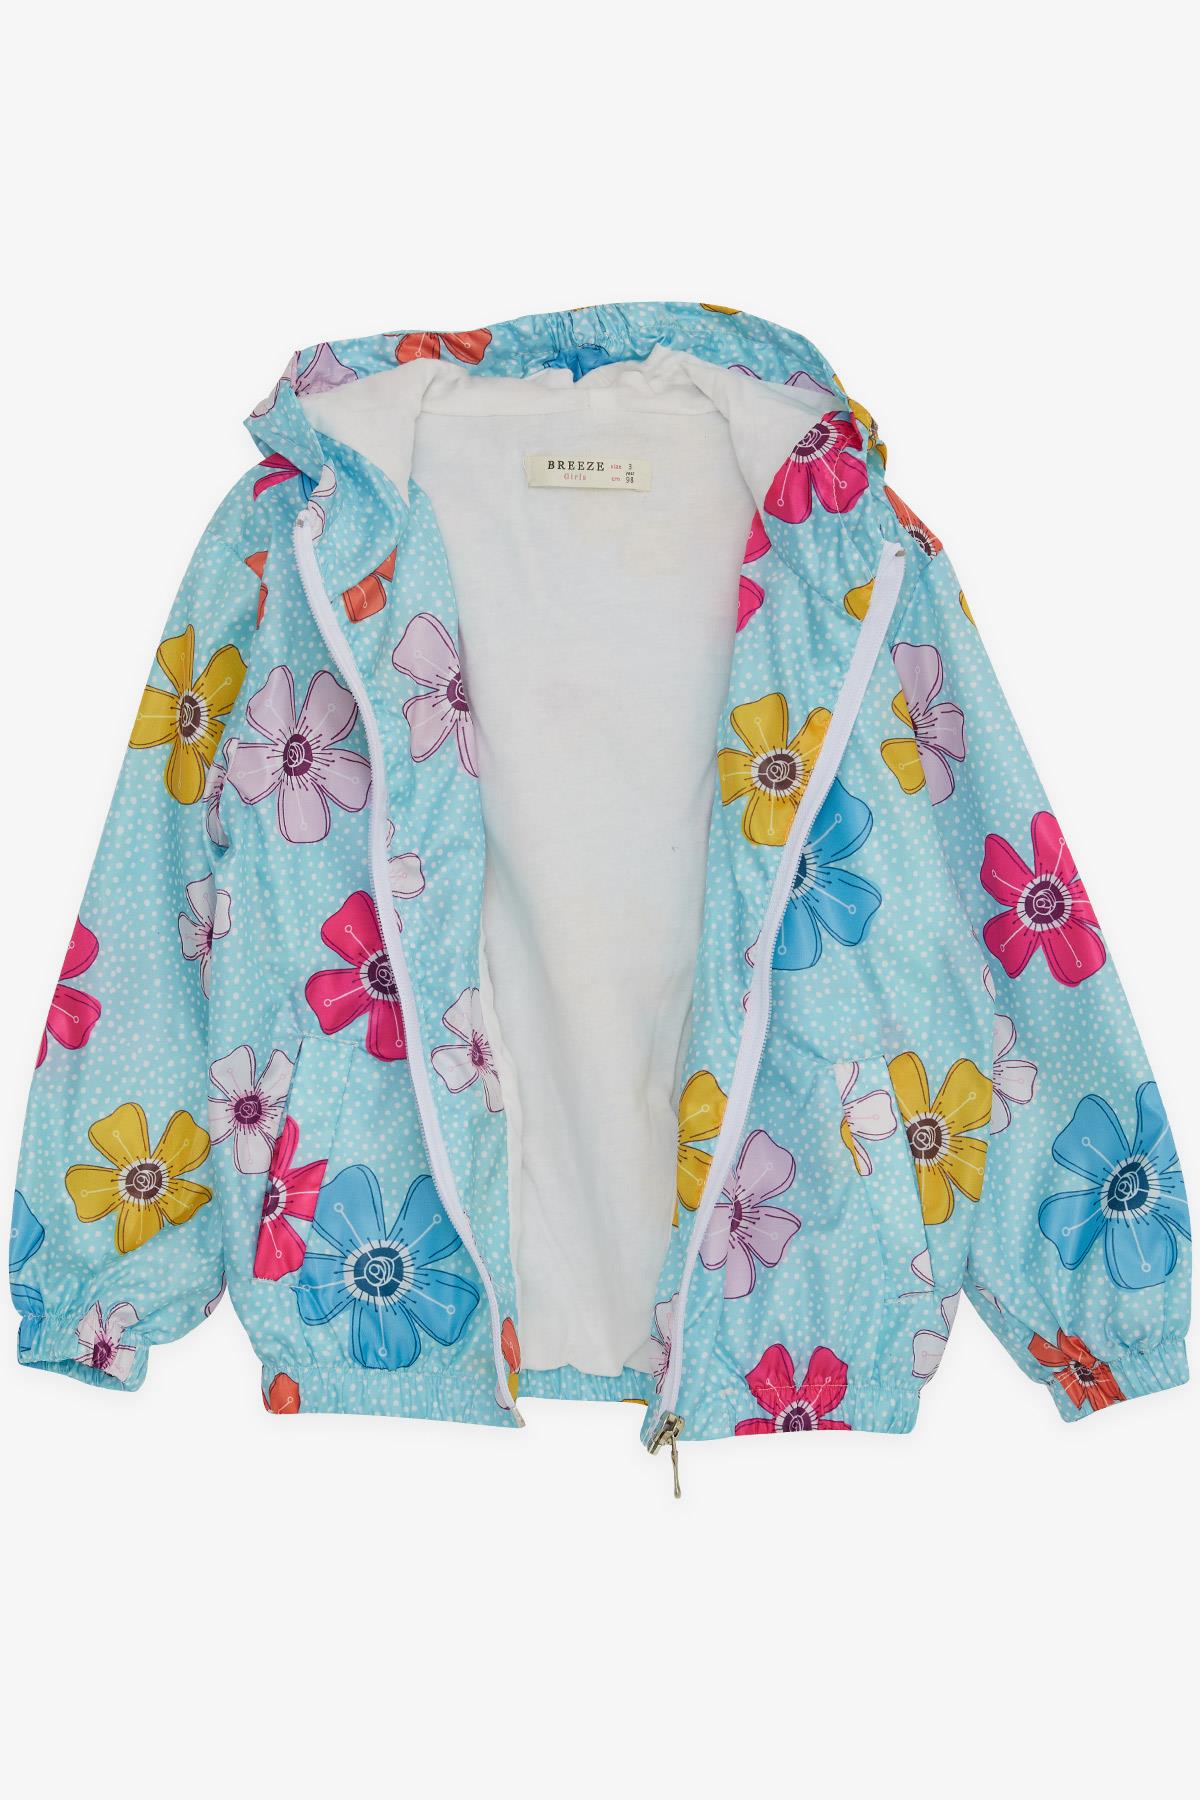 Kız Çocuk Yağmurluk Çiçek Desenli Turkuaz 1-5 Yaş - Sıcacık Dış Giyim |  Breeze